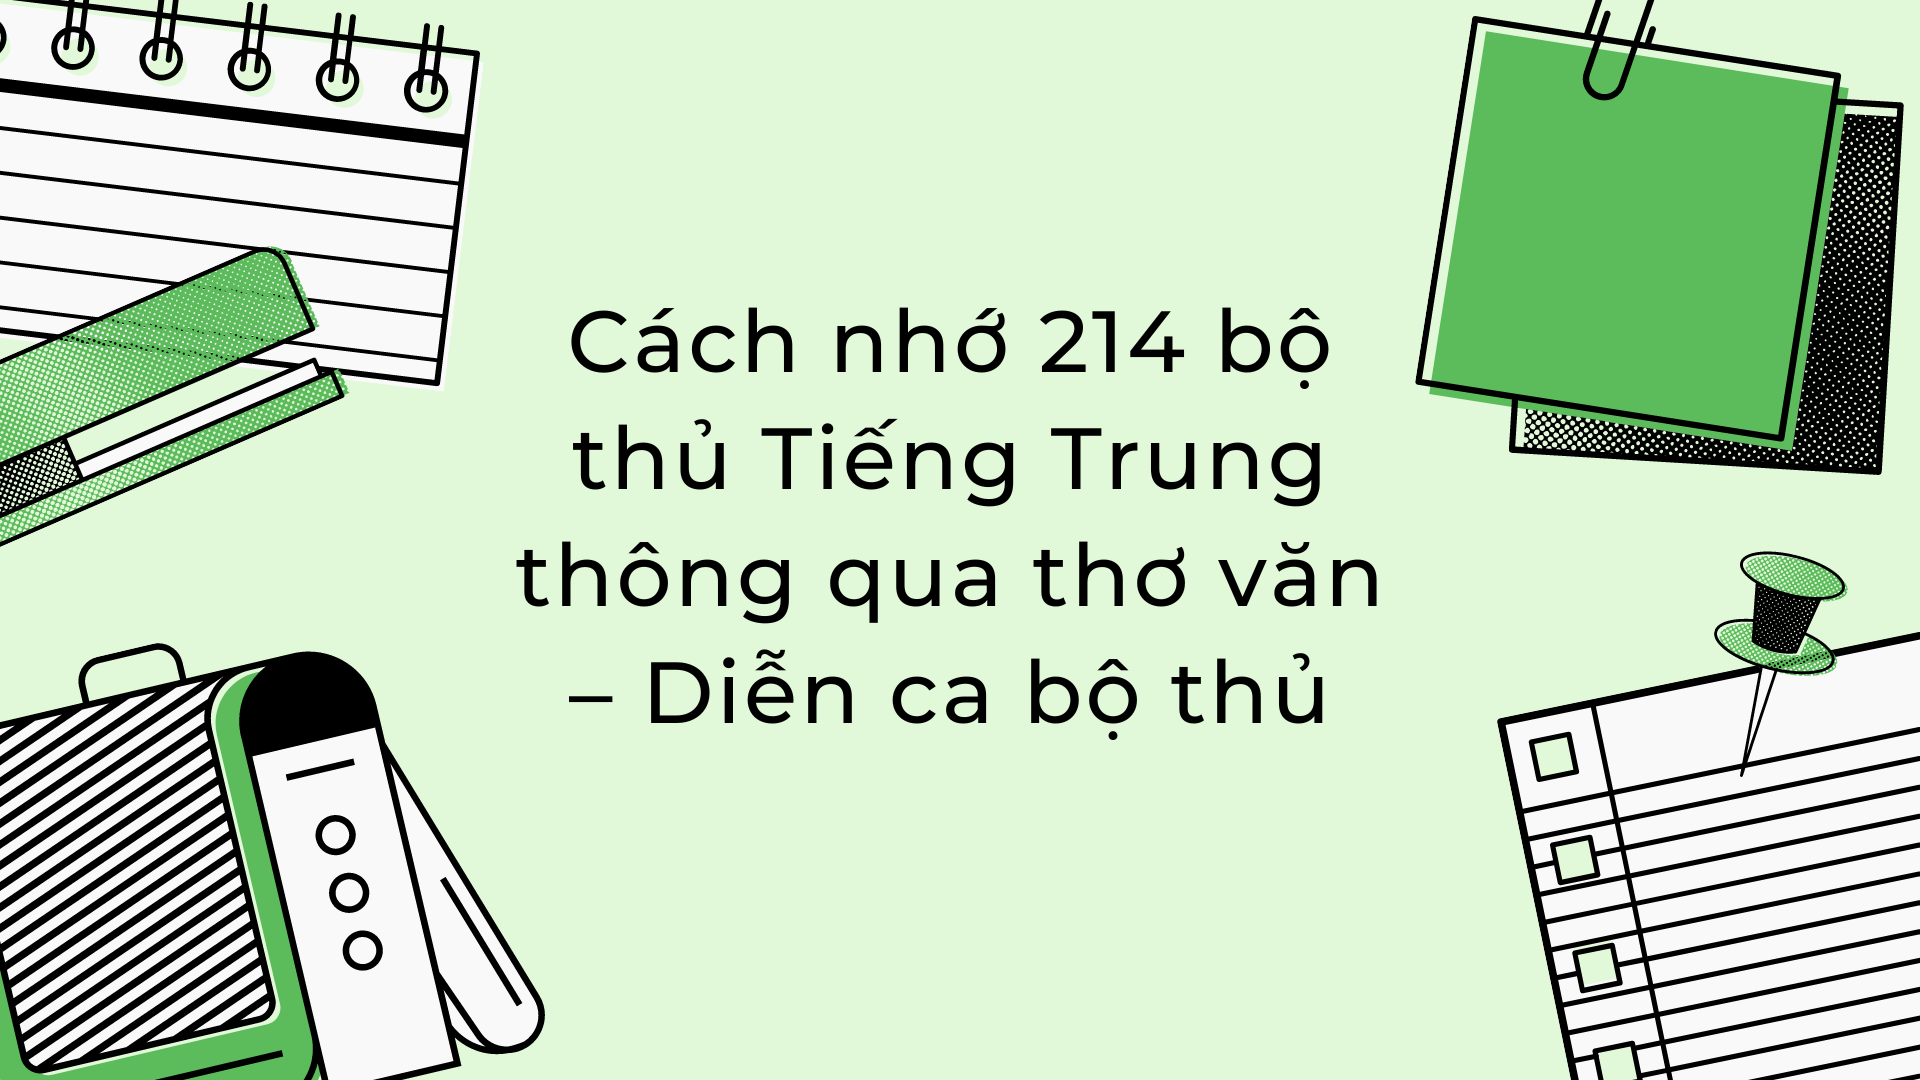 “Có những phương pháp nào để học thuộc 214 bộ thủ tiếng Trung nhanh nhất?” 
